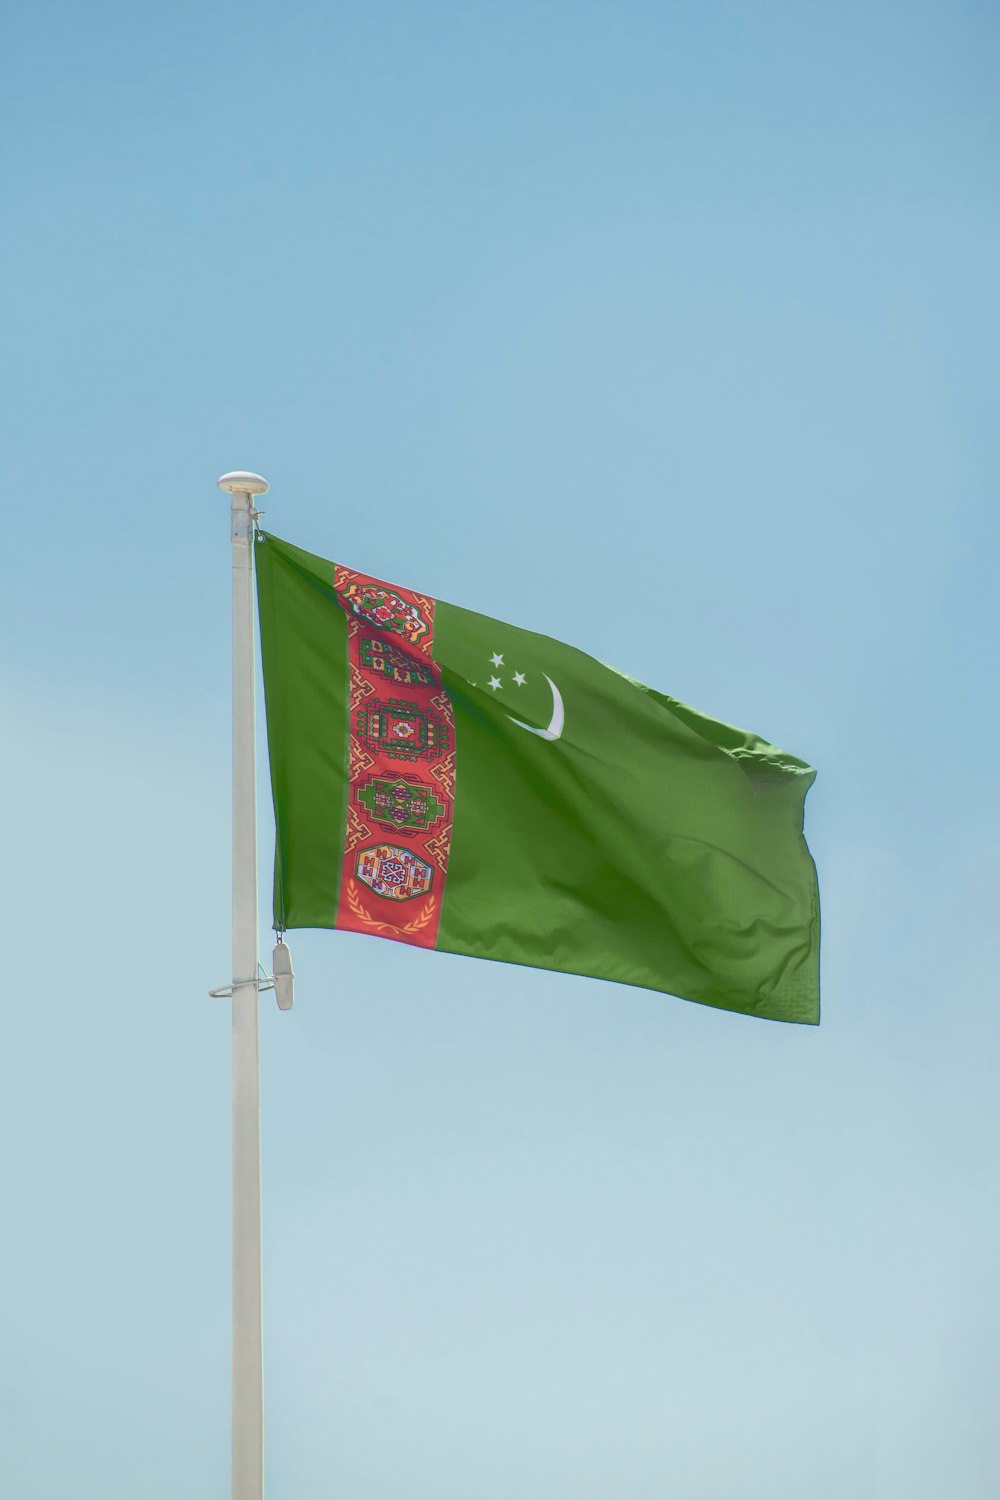 a green flag on a pole